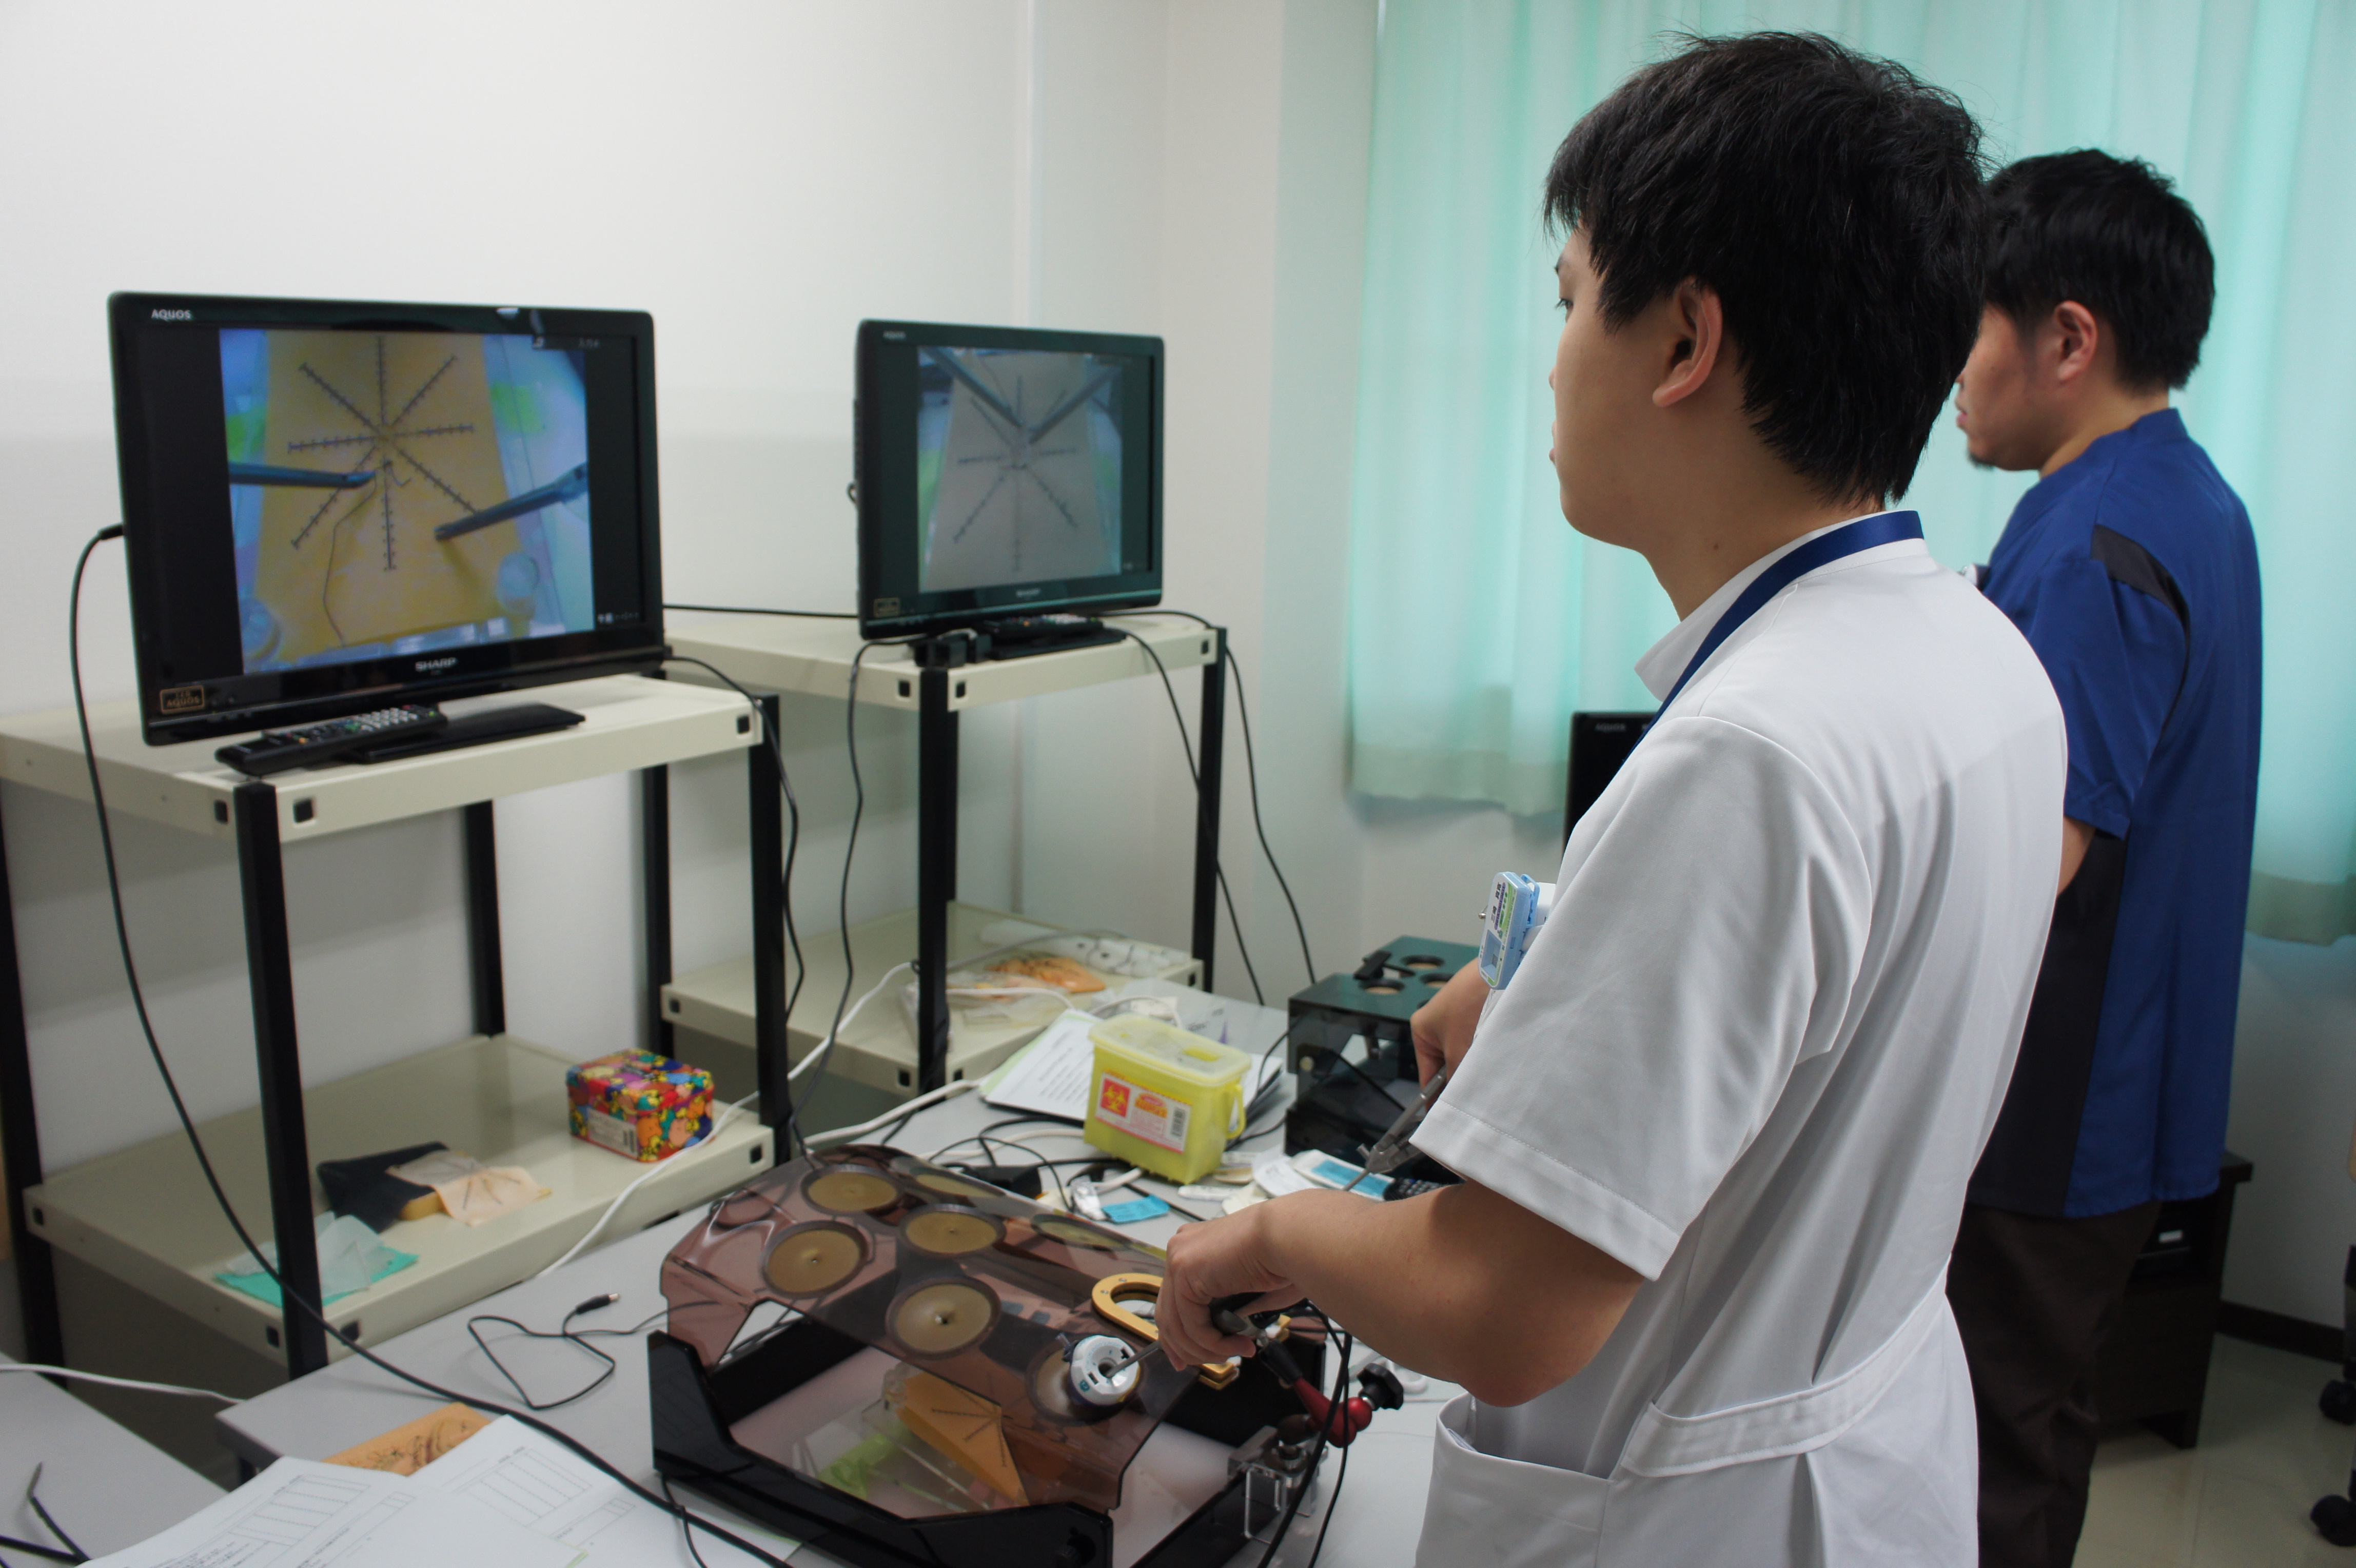 内視鏡縫合レクチャー。当院は患者さんへの優しい医療提供の一環として内視鏡手術を推奨しています。
いつでもトレーニングできるよう模型が研修室横に常備してあります。